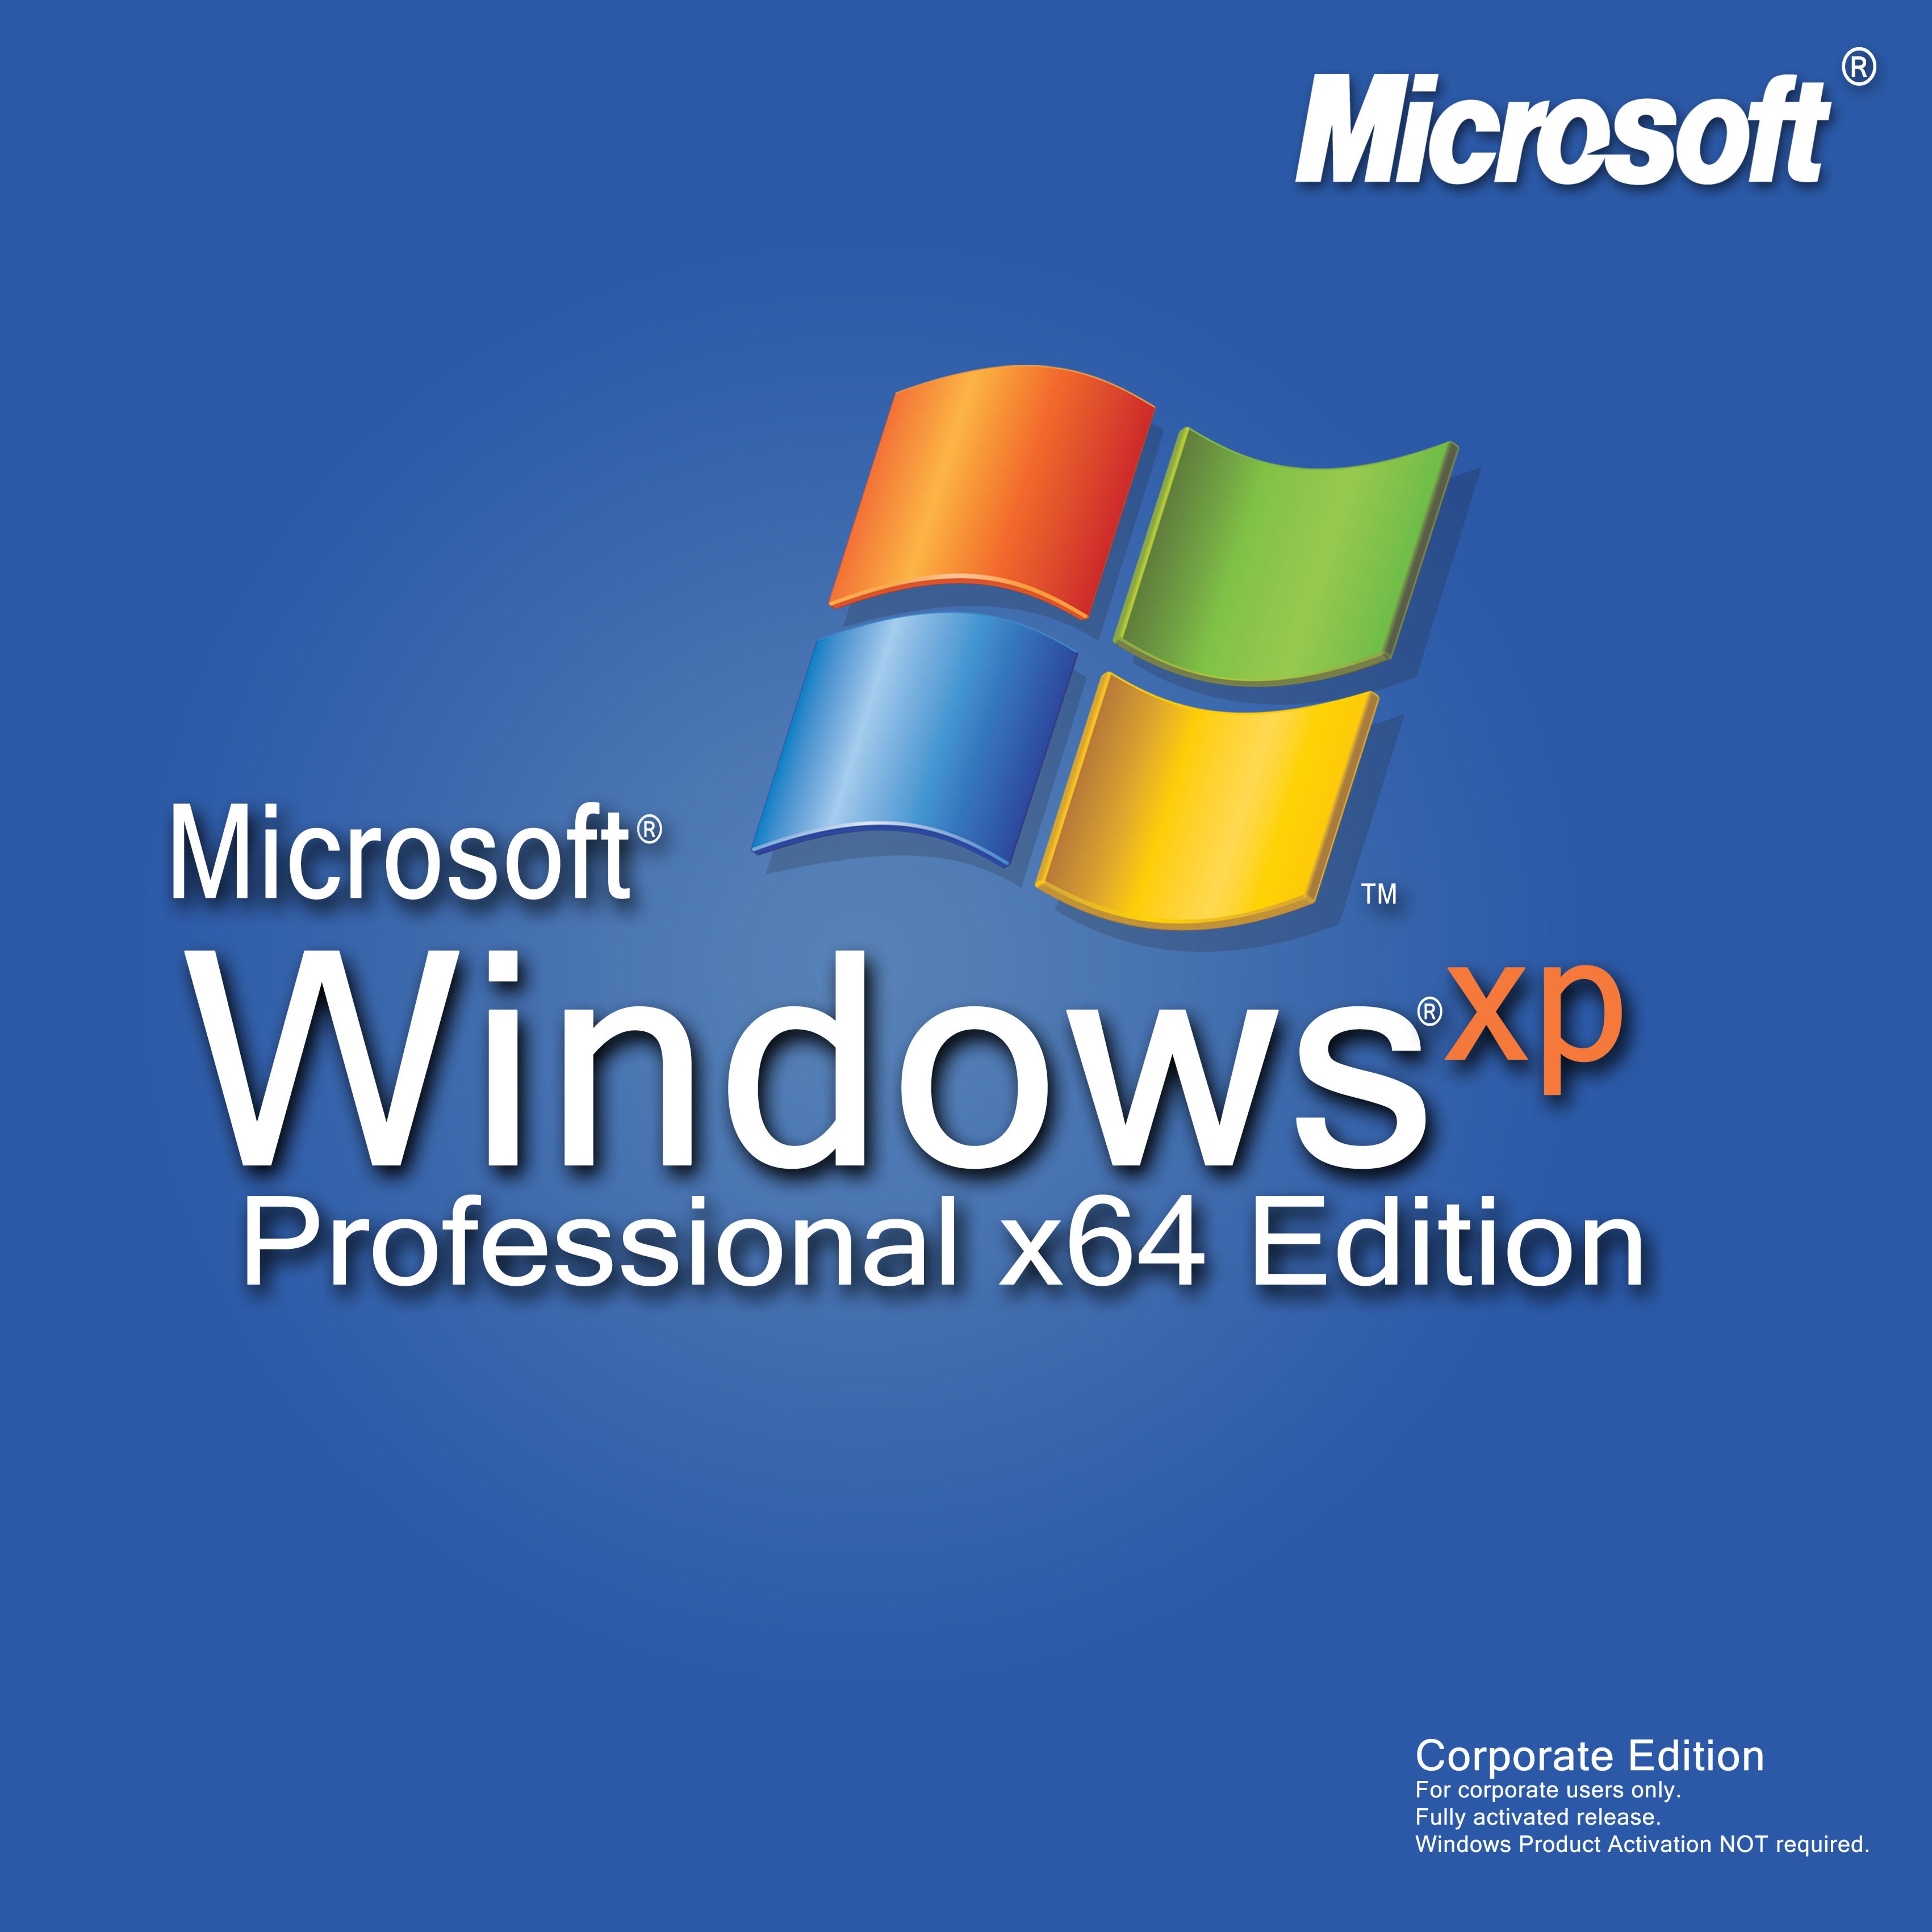 Как установить windows 7 или 10 (x64) с загрузочной флешки из образа диска iso на ноутбук или компьютер?